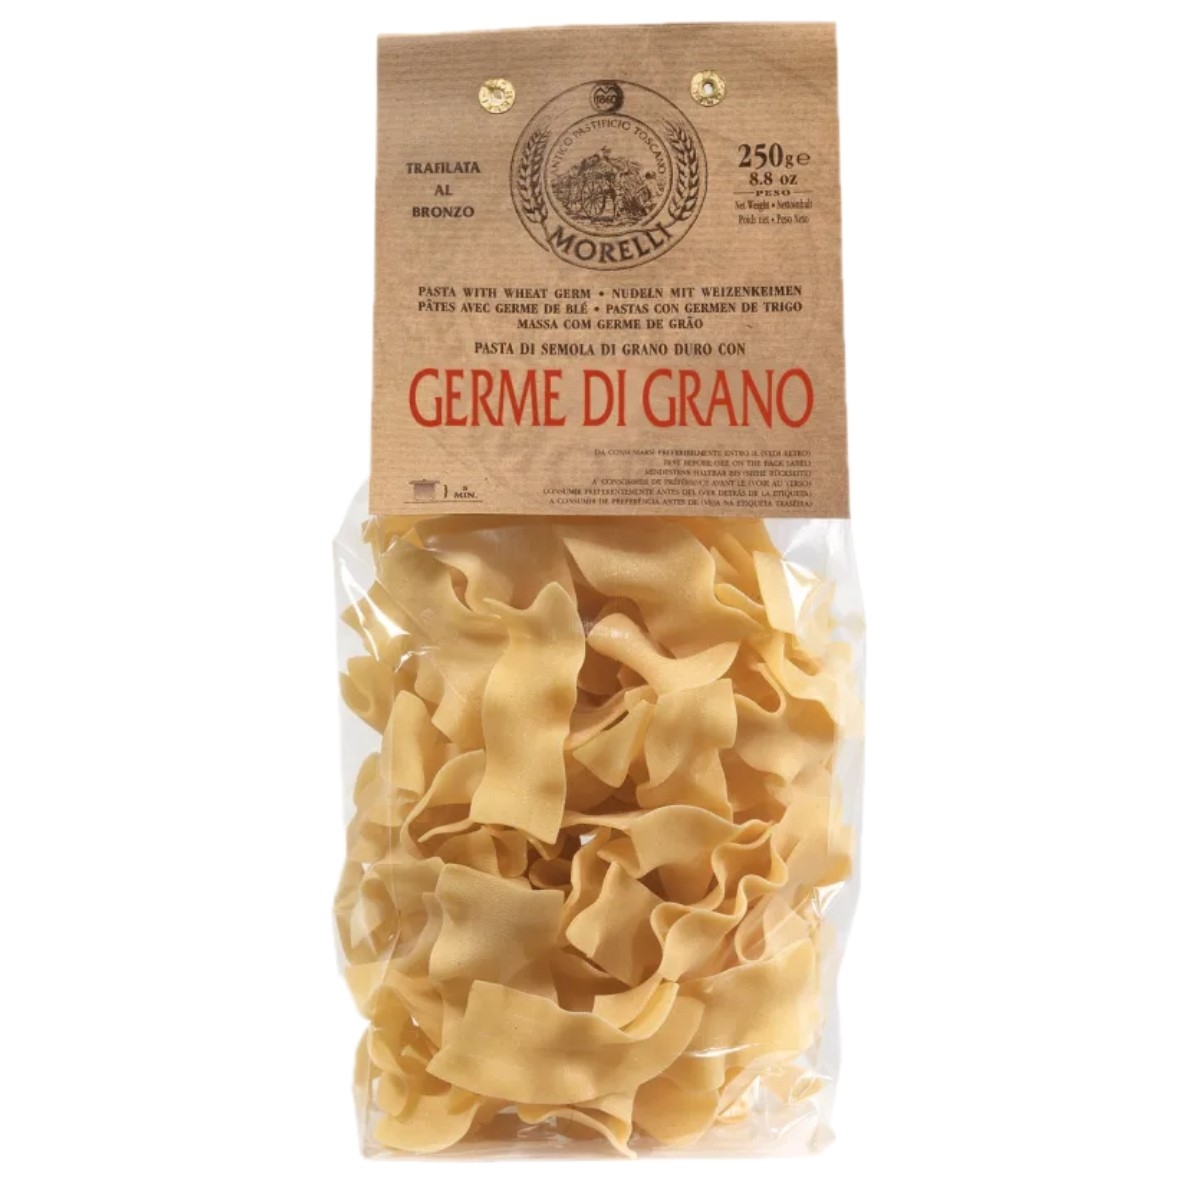 Antico Pastificio Morelli - Pasta Cereali - Germe di Grano -Tacconi BIO - 250 g